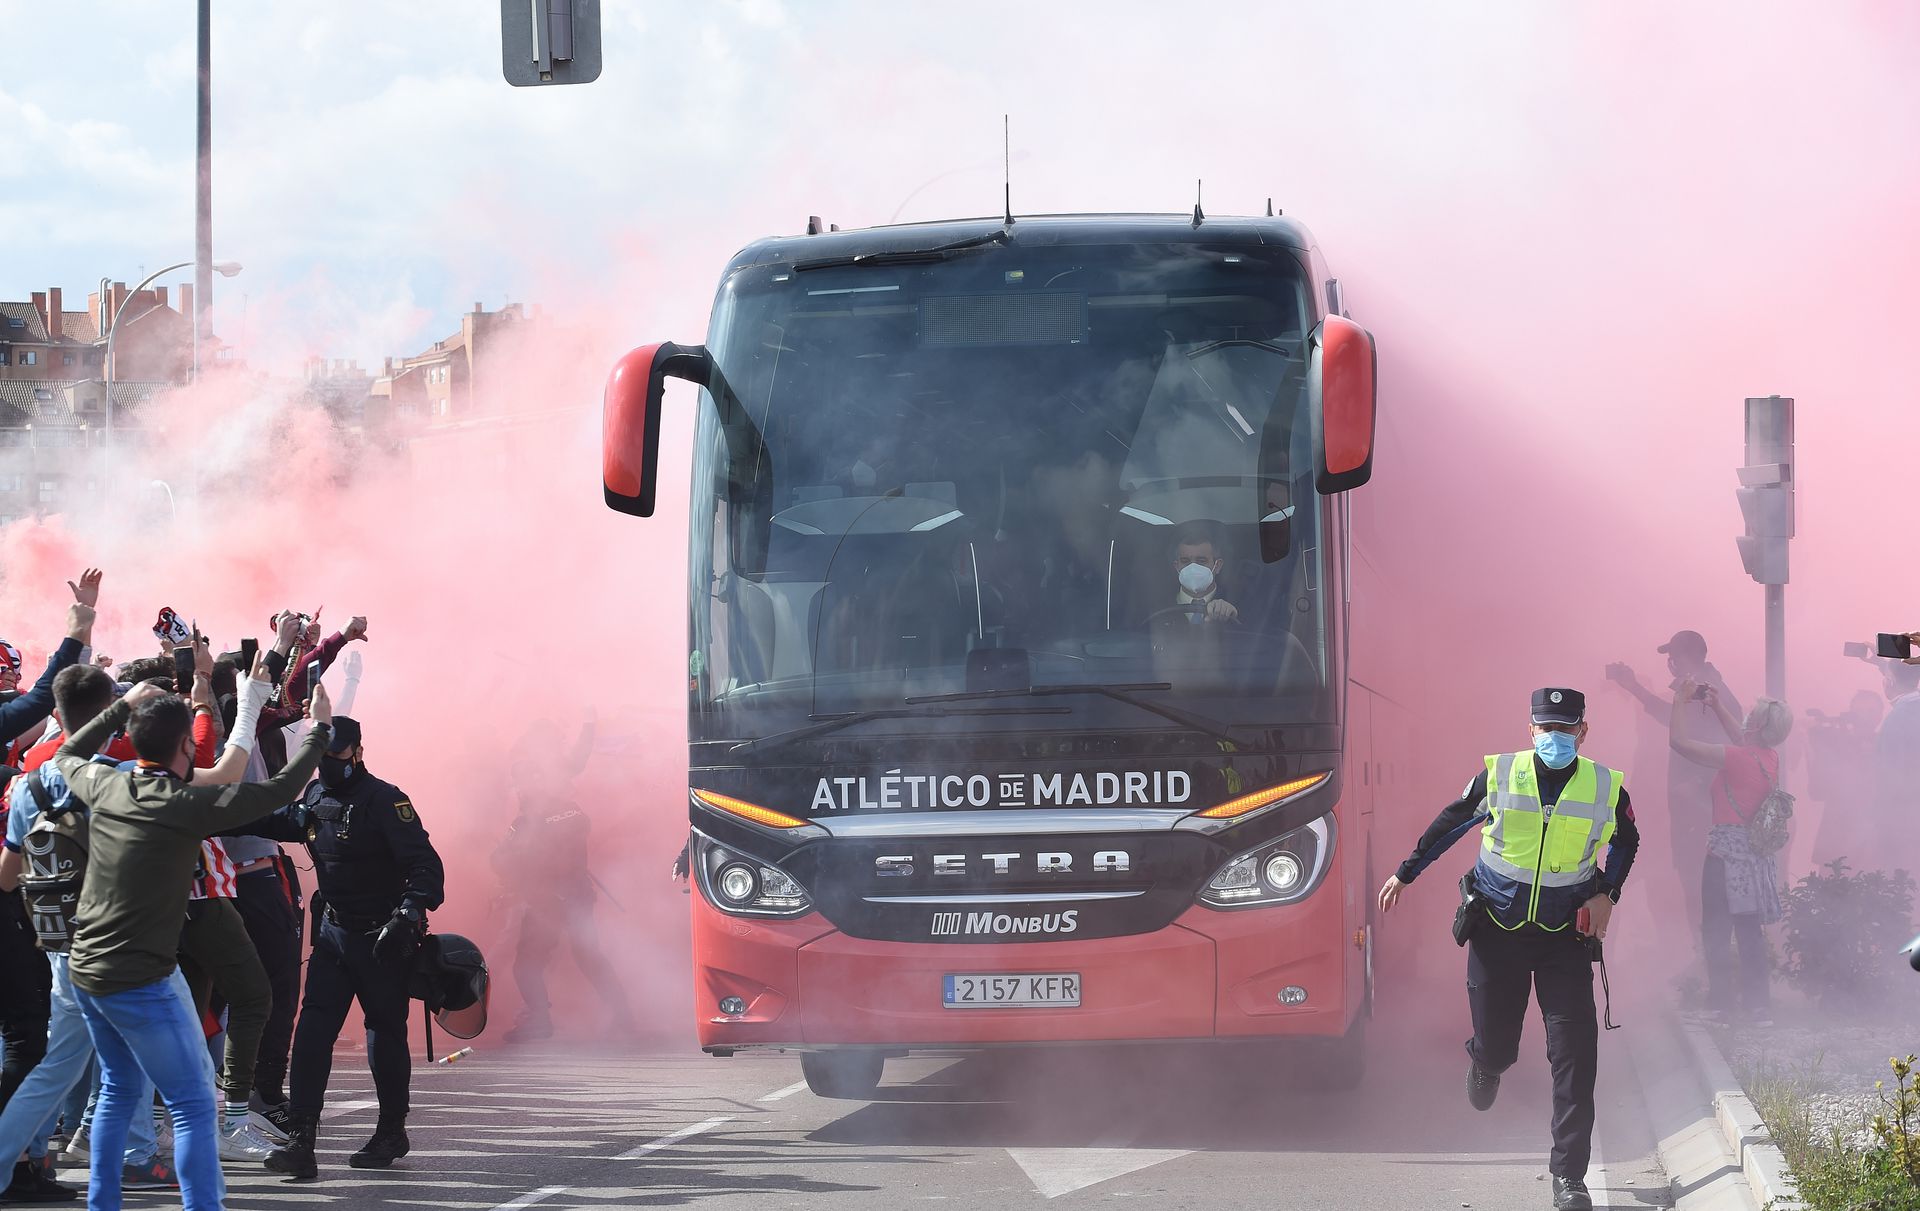 Atletico de Madrid v Real Madrid - La Liga Santander